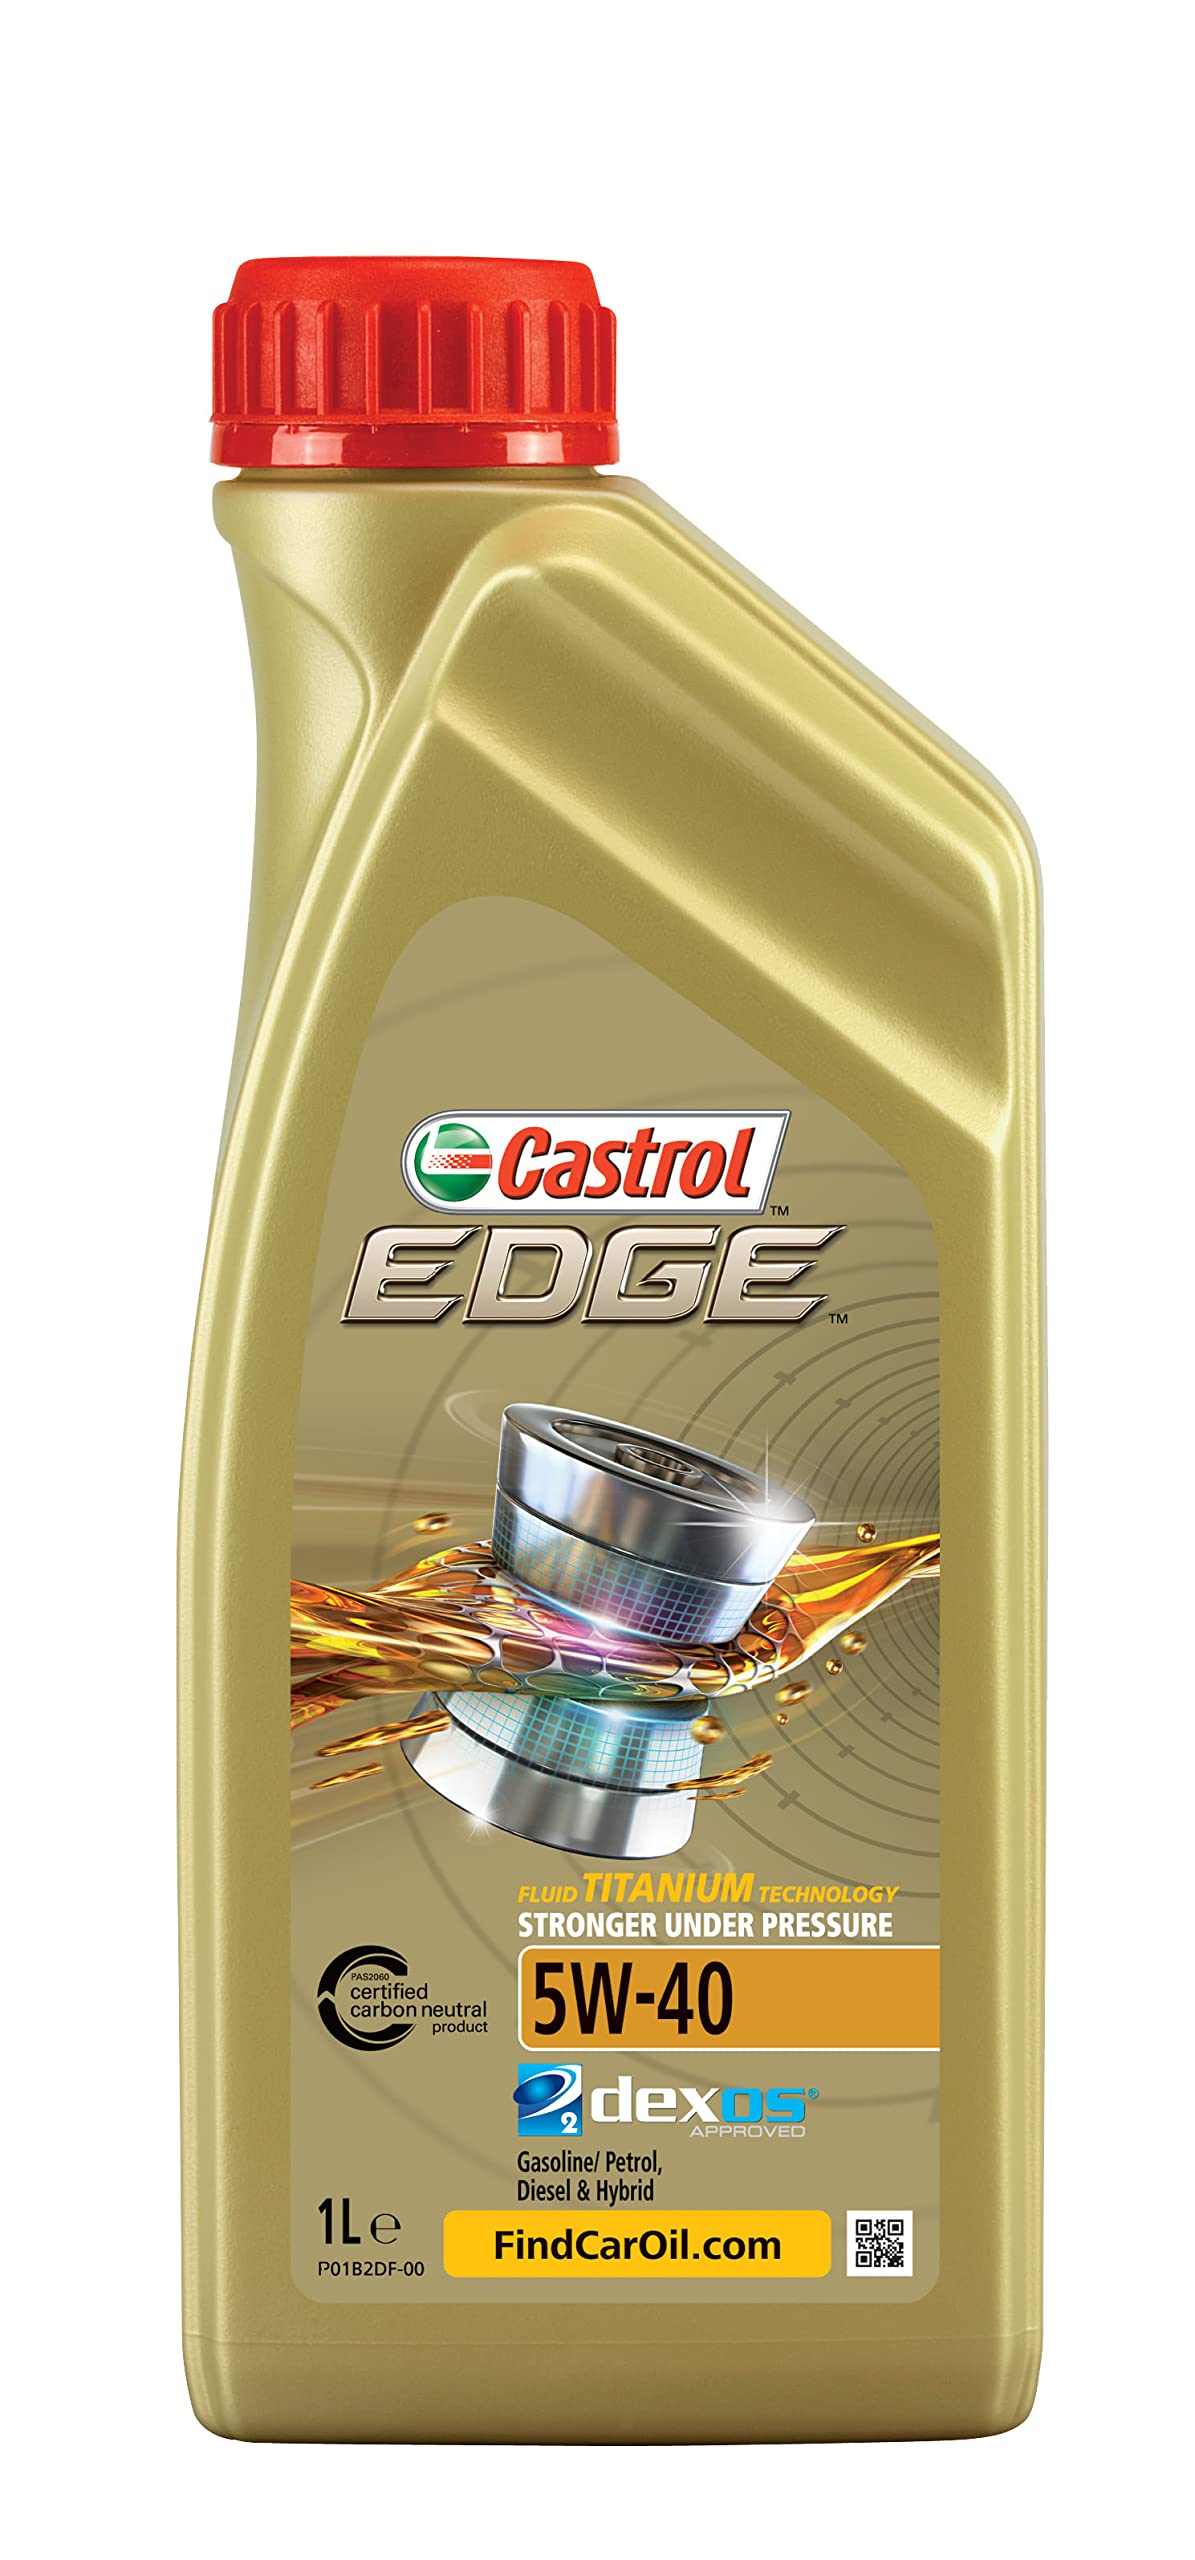 Castrol EDGE 5W-40, 1 Liter von Castrol